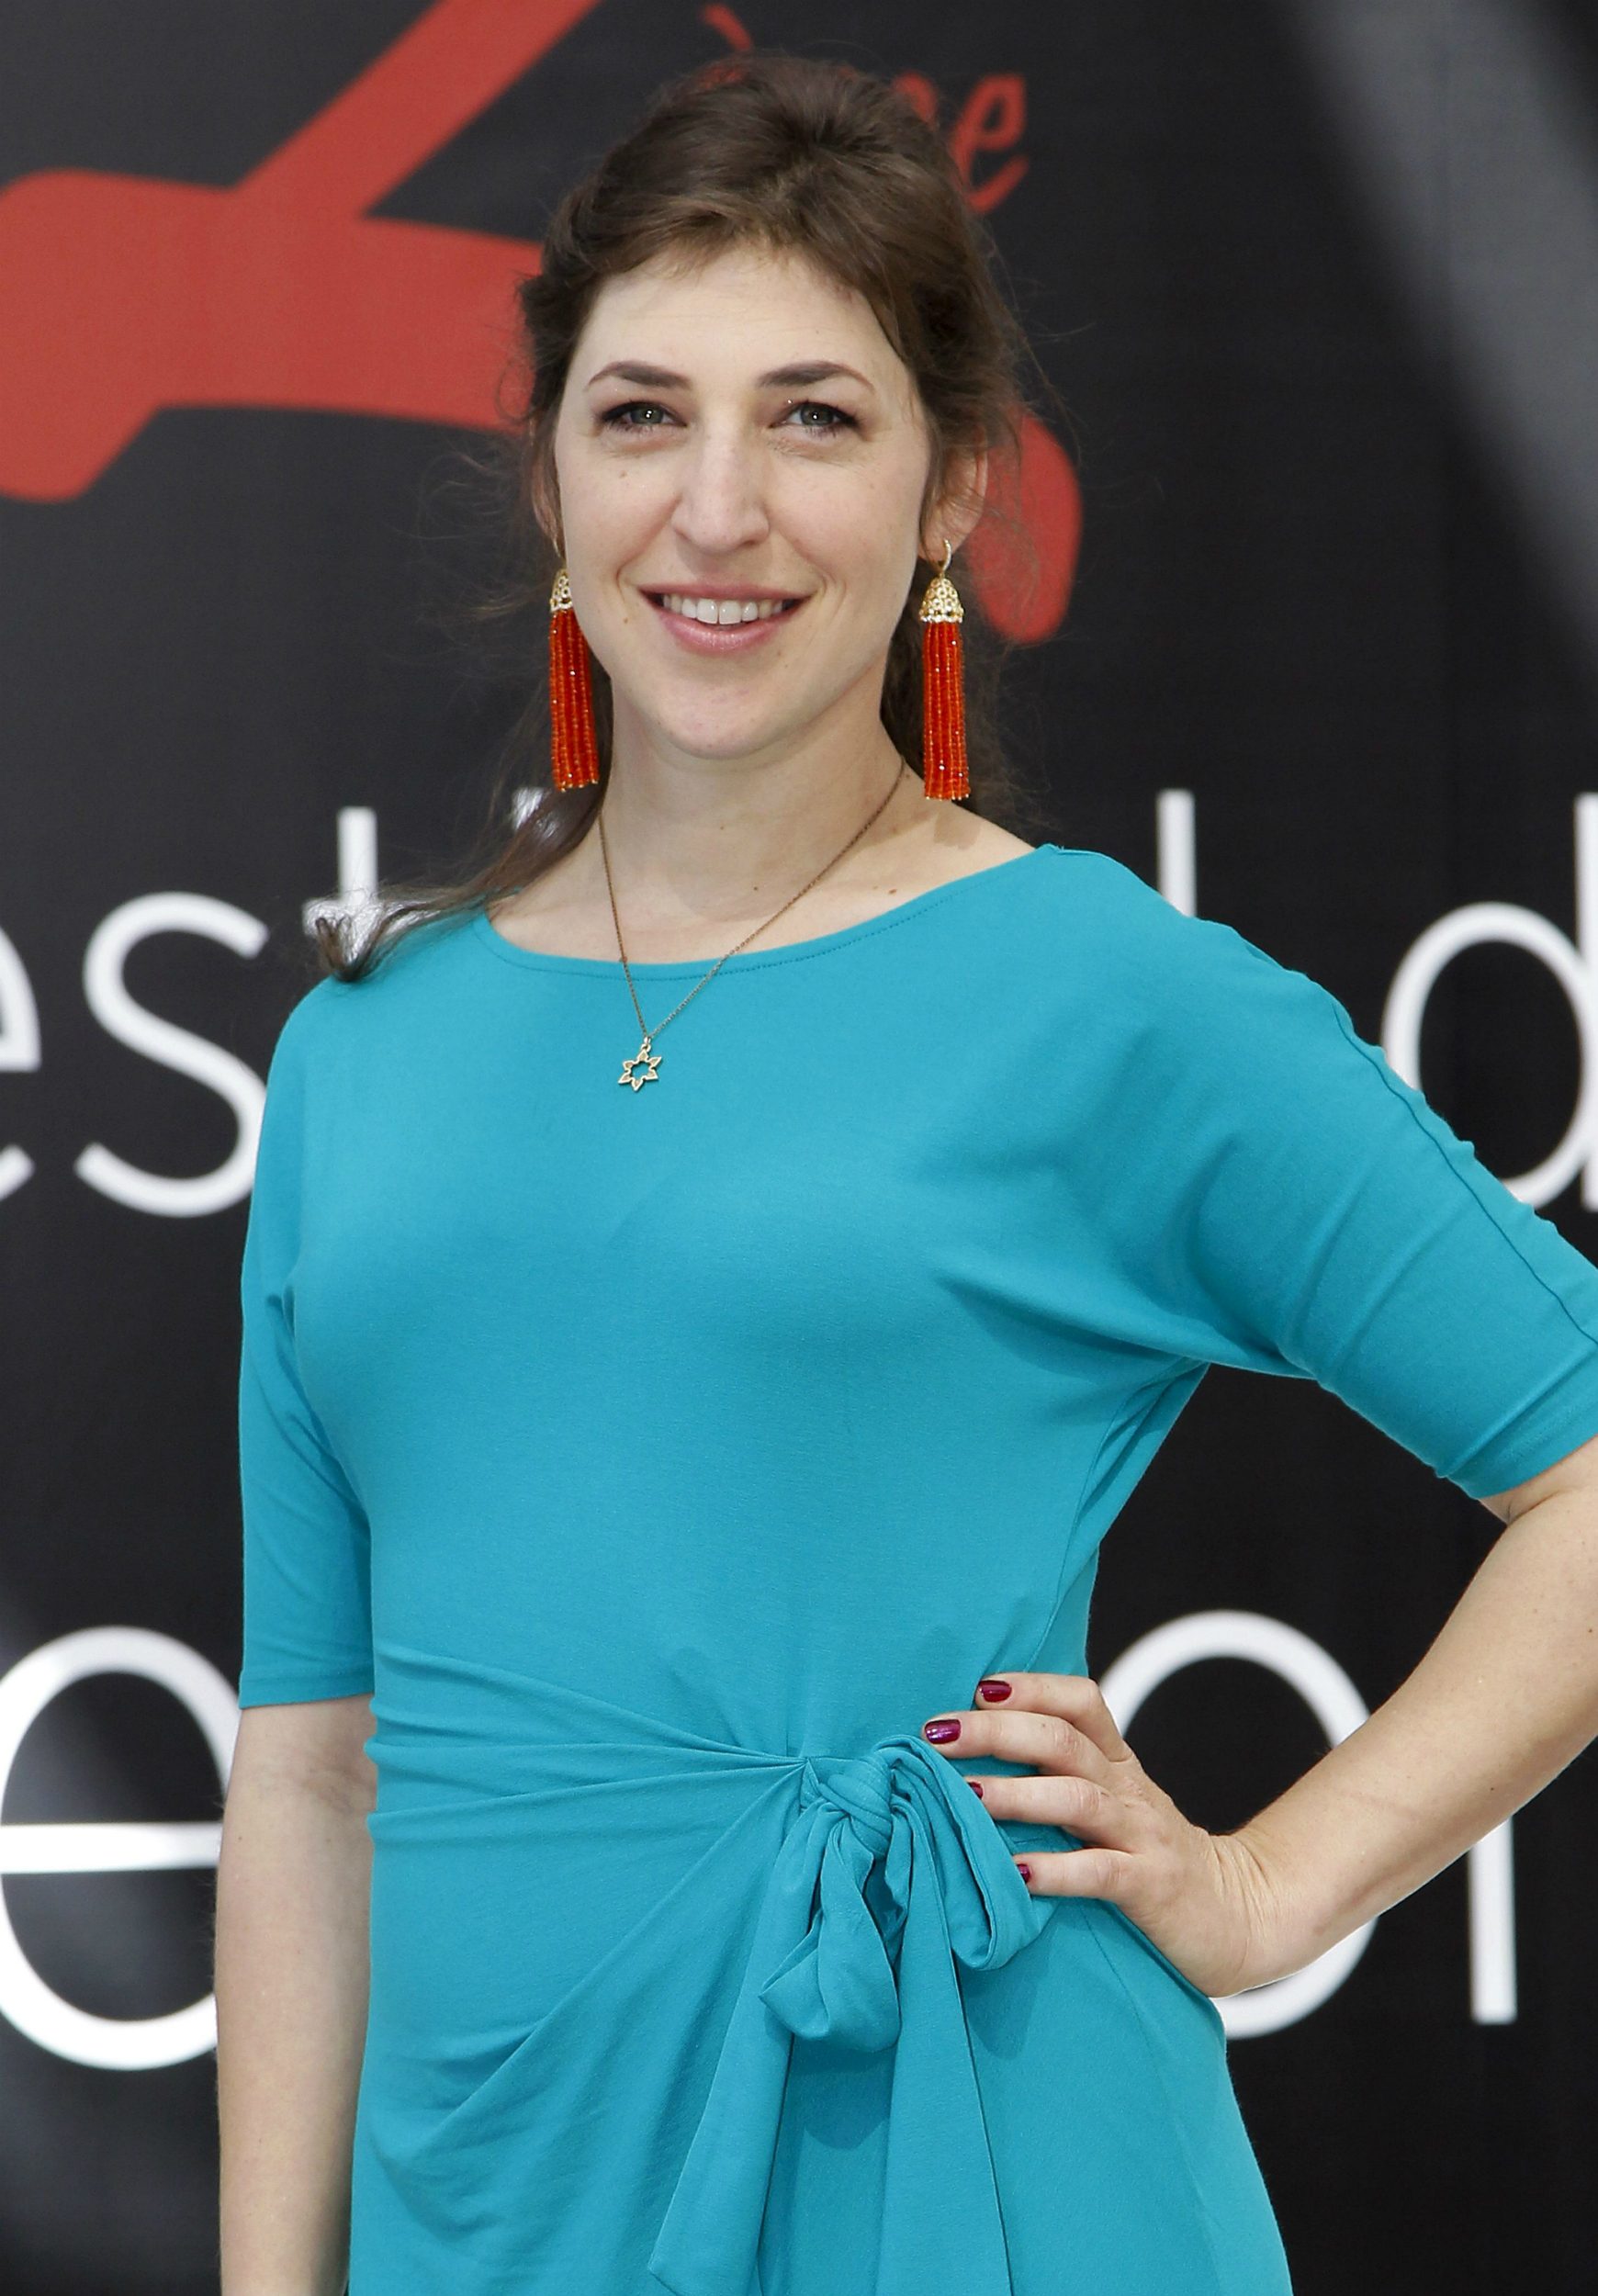 La actriz estadounidense Mayim Bialik, de la serie televisiva; The Big Bang Theory, posa para los fotógrafos durante su participación en el Festival de Televisión de Montecarlo, Mónaco,en 2012. EFE/Sebastien Nogier